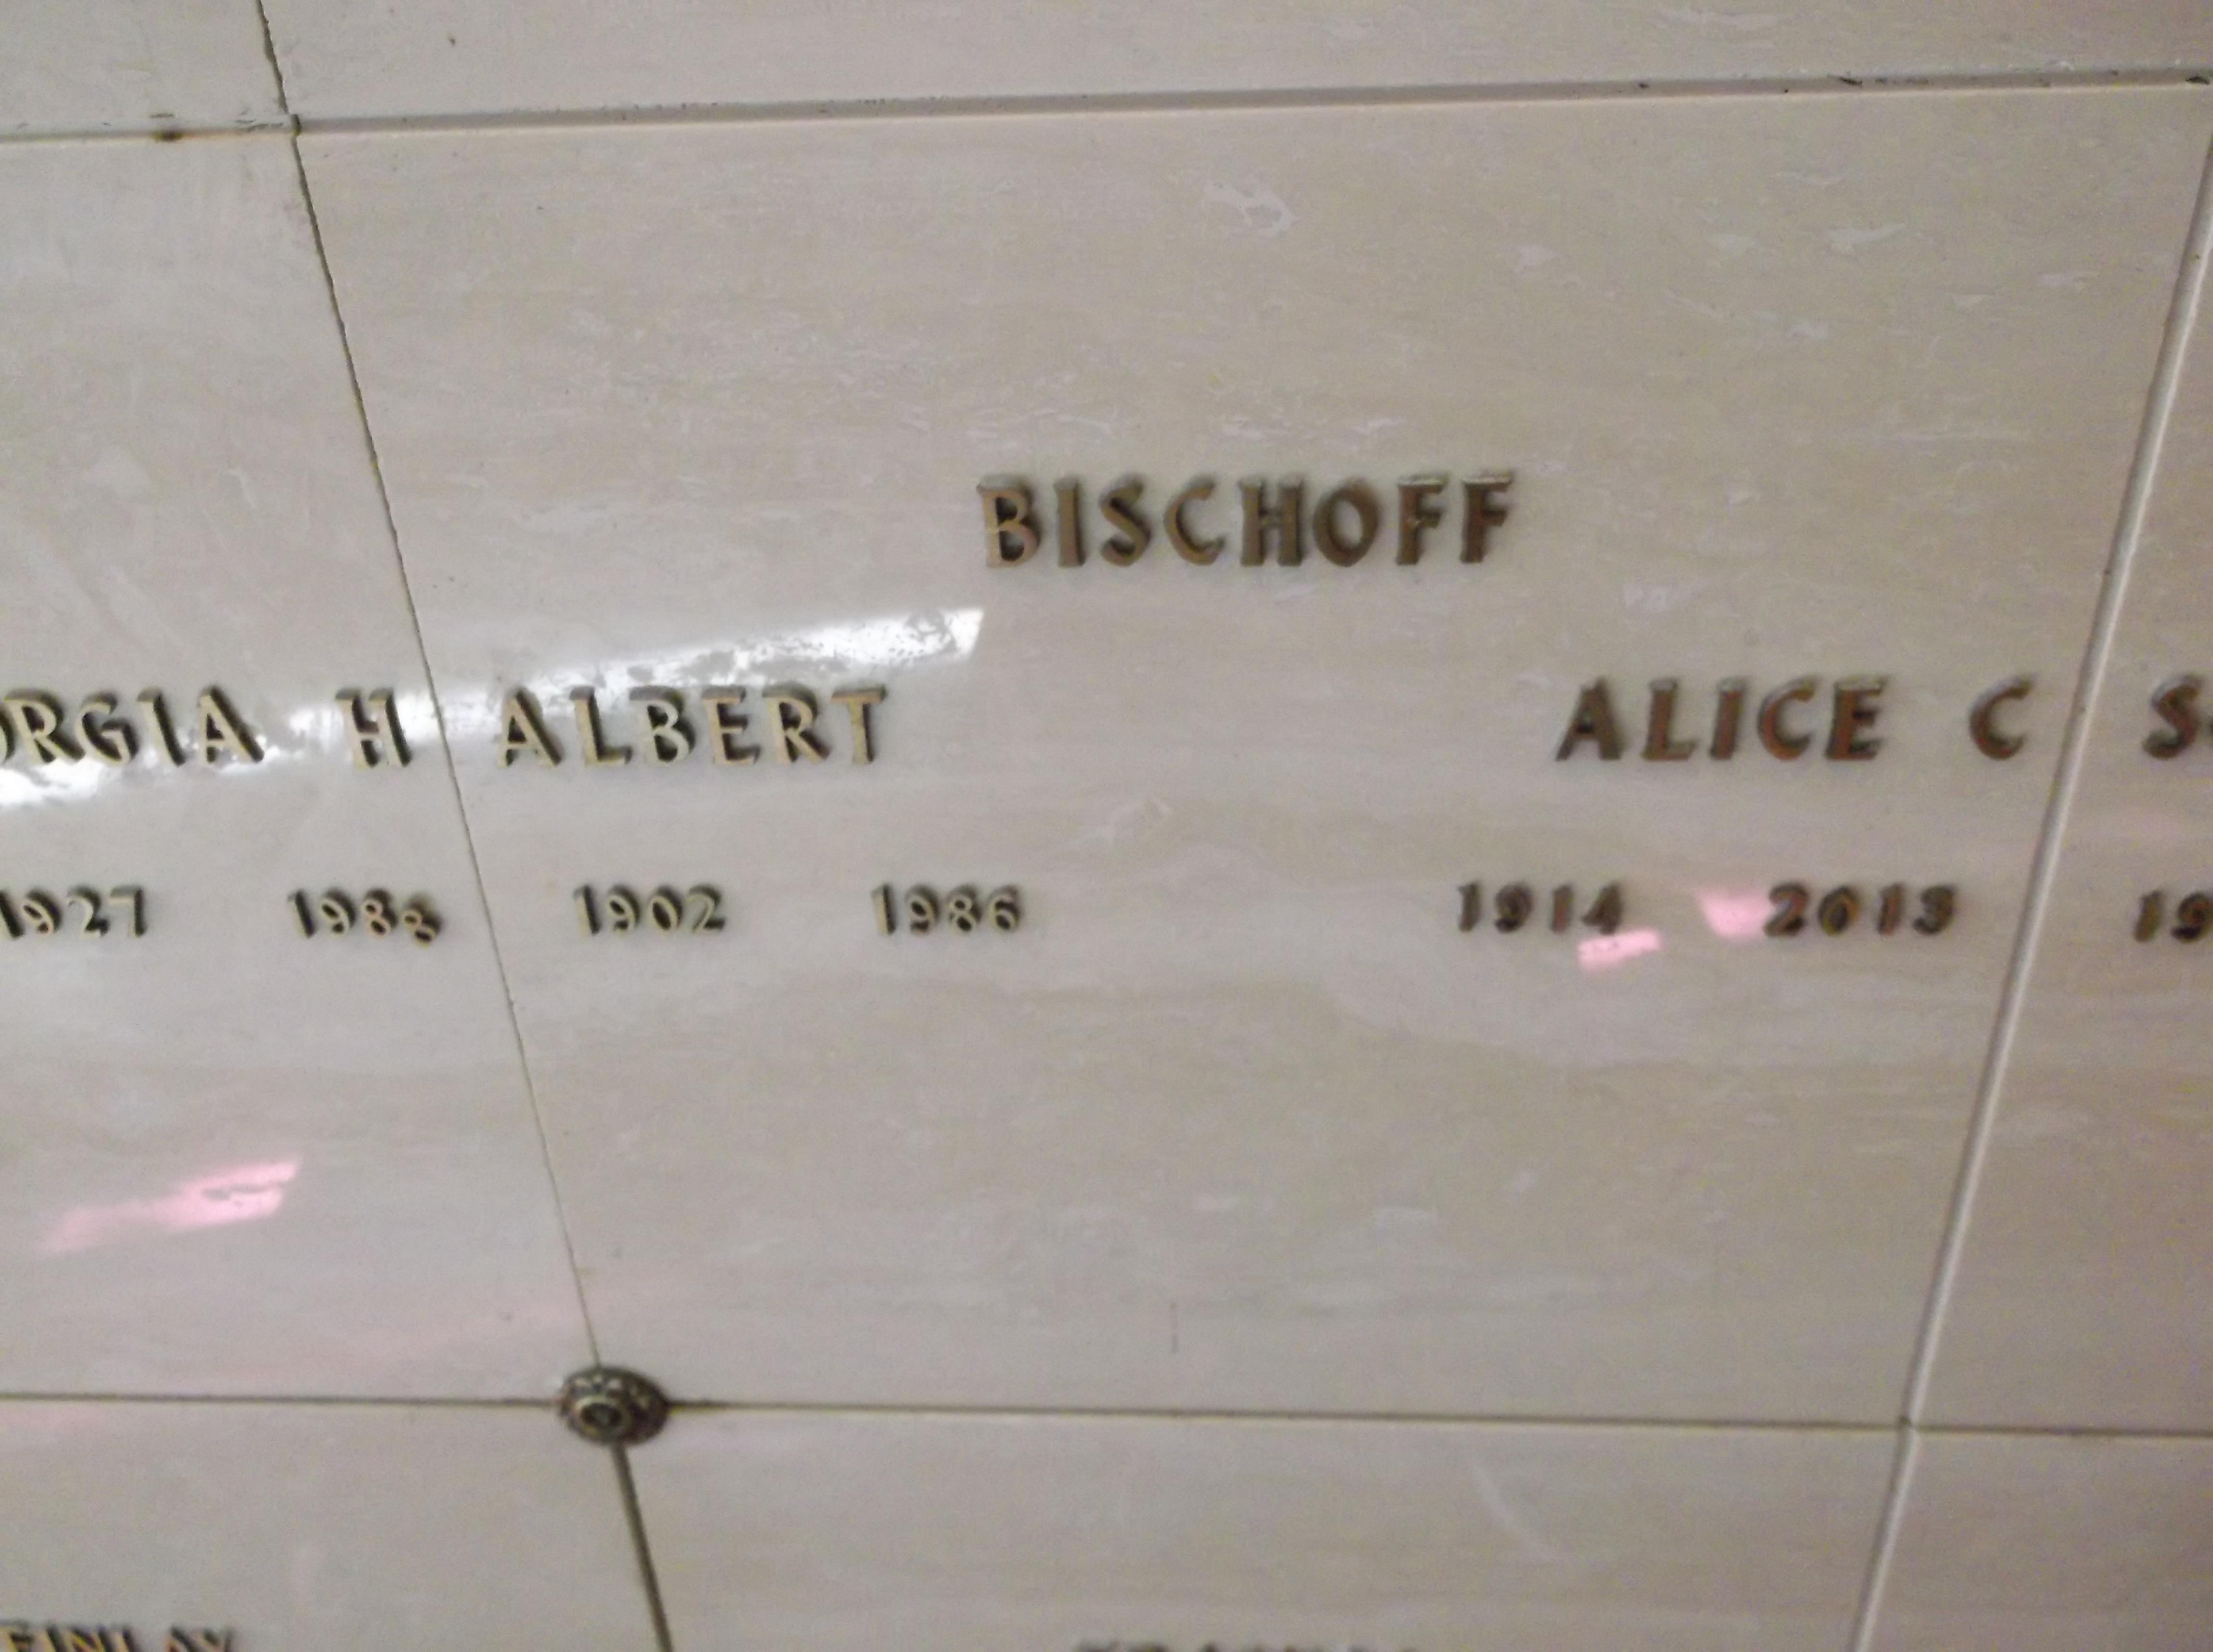 Albert Bischoff